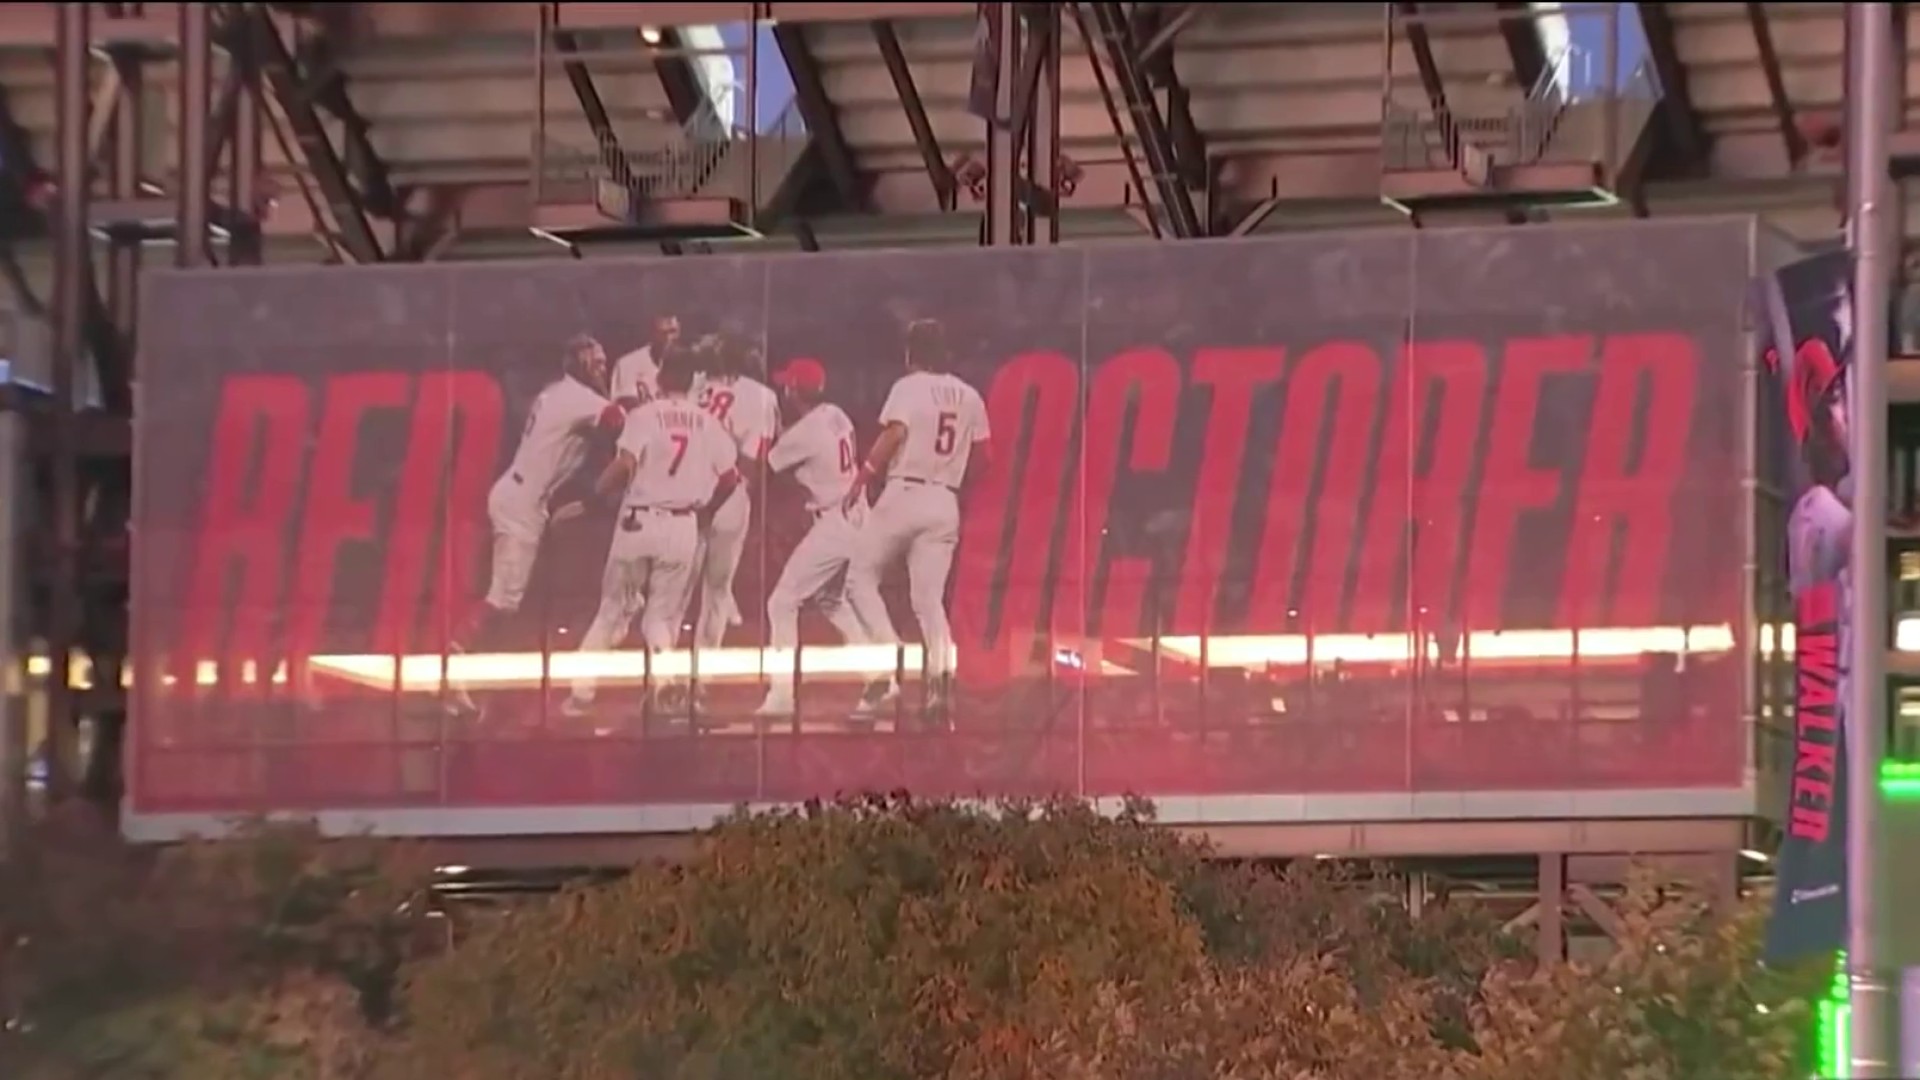 Phillies catcher Carlos Ruiz suspended for amphetamines